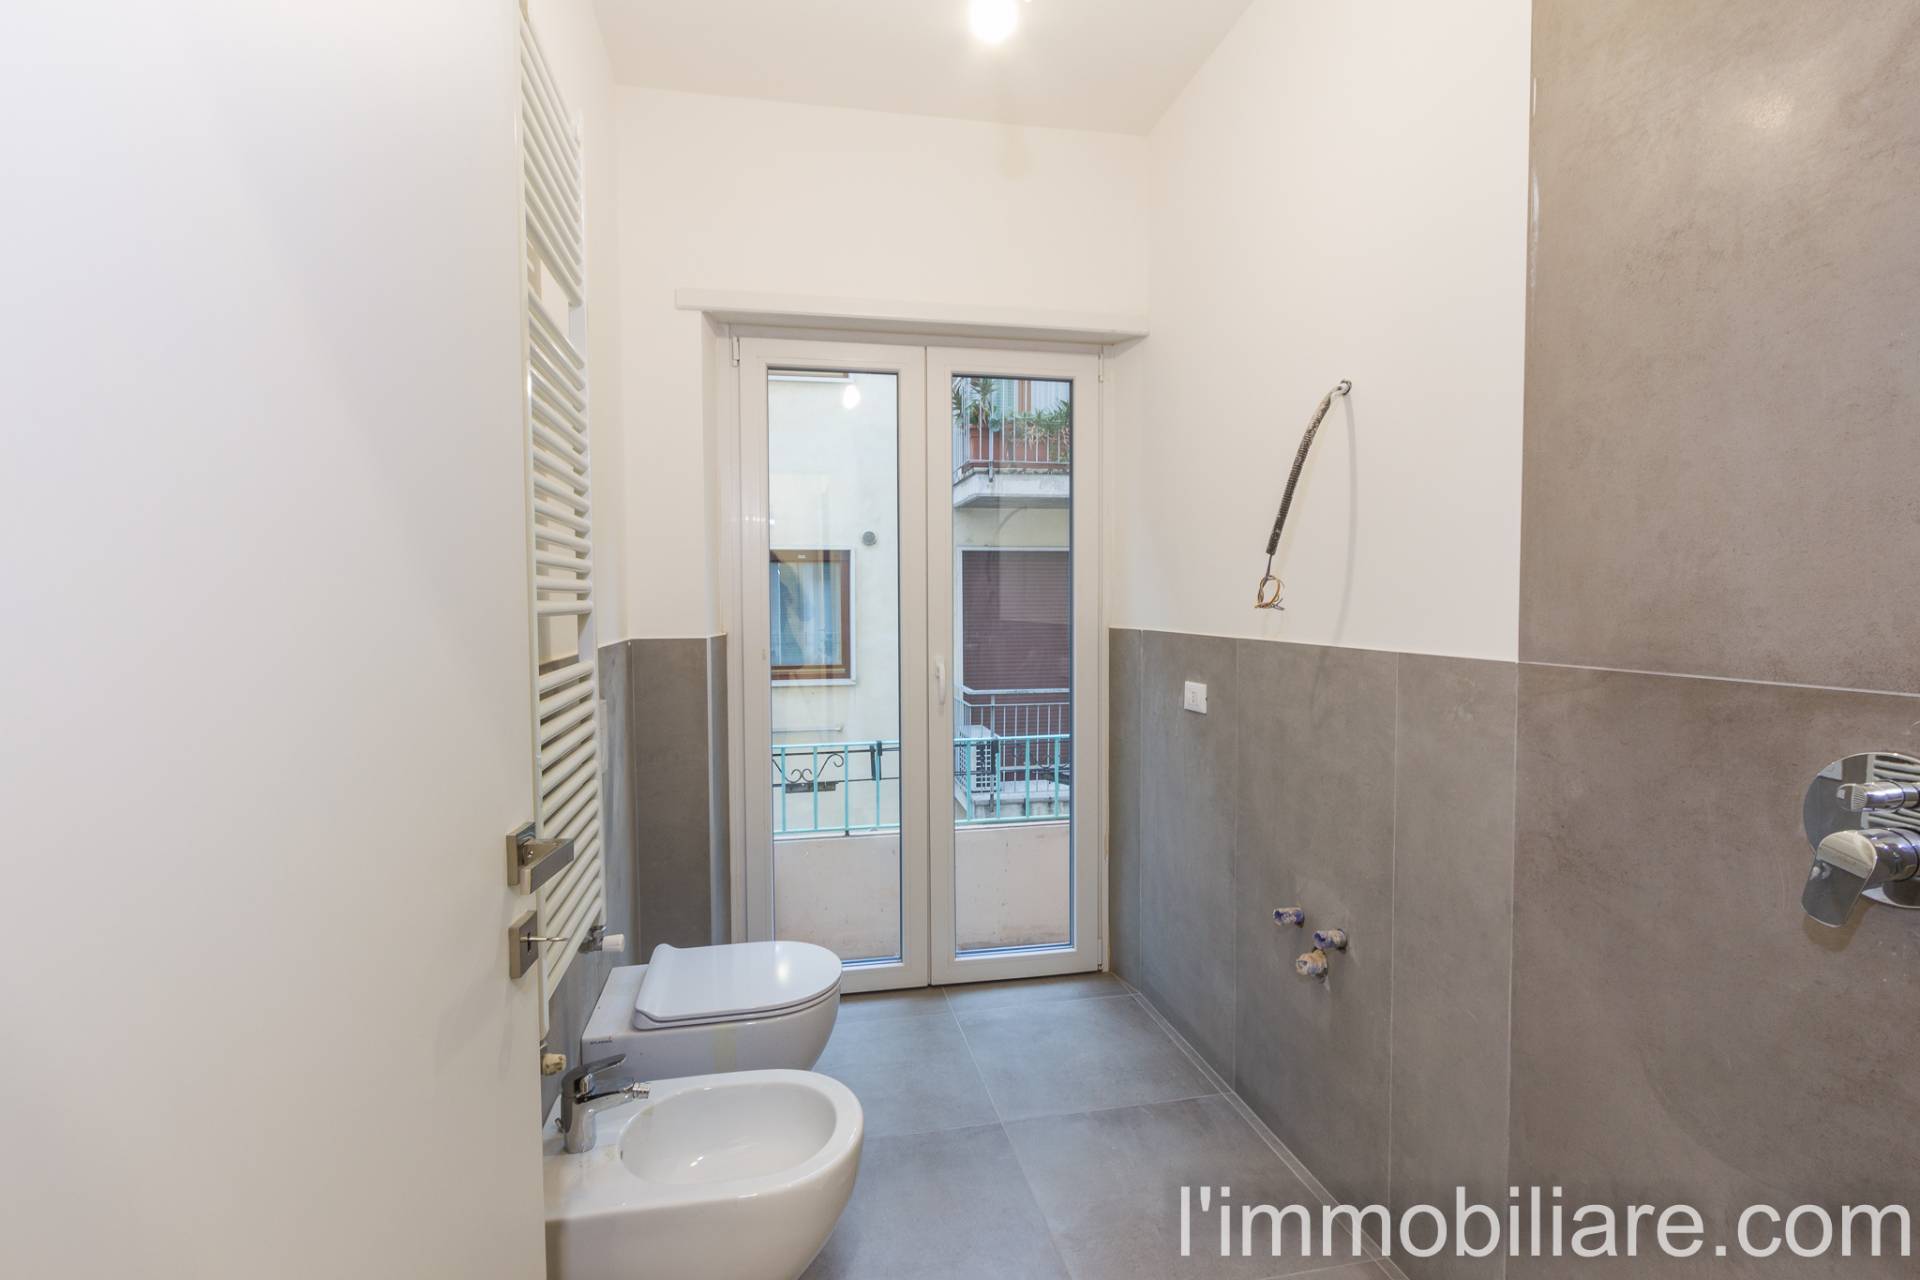 Appartamento in Vendita a Verona: 3 locali, 85 mq - Foto 15